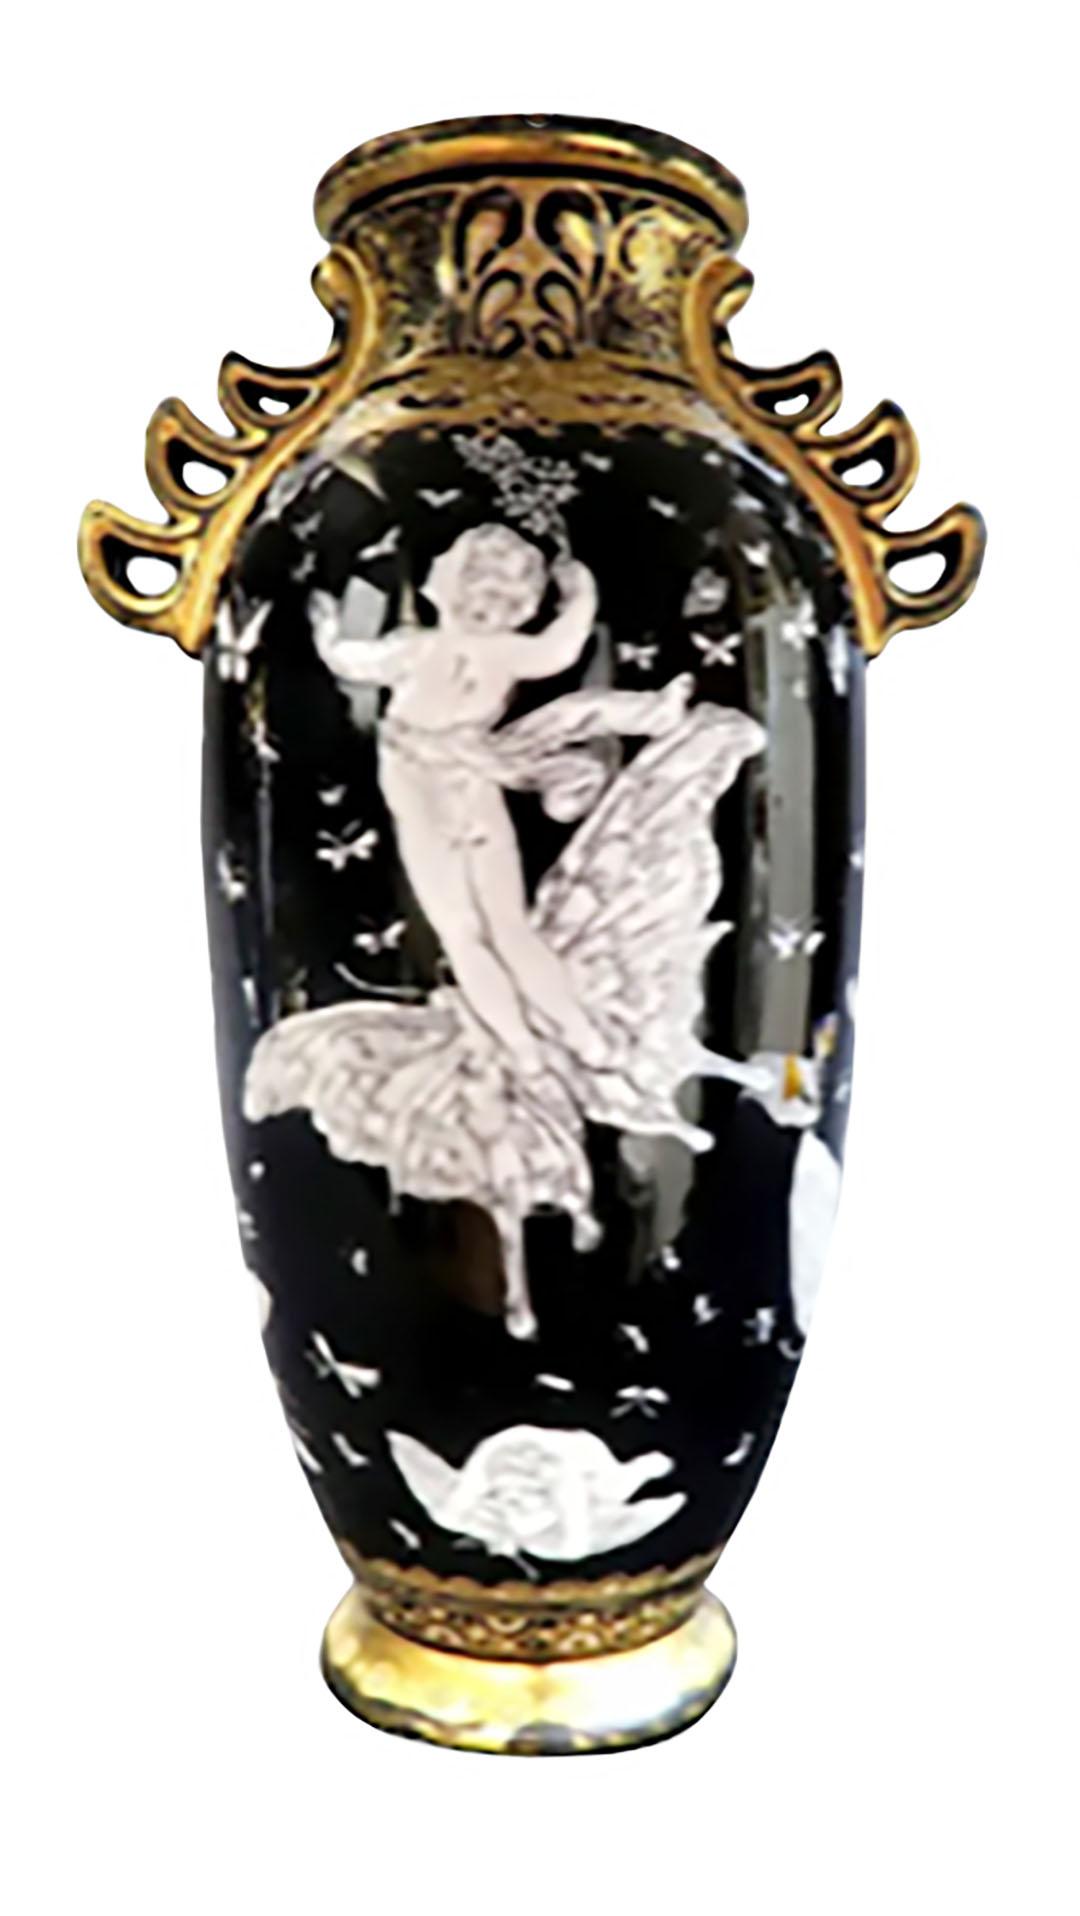 Paire de vases de style pate sur pate de Minton avec papillons en relief blanc noir, et porcelaine or, vers 1900, Angleterre.